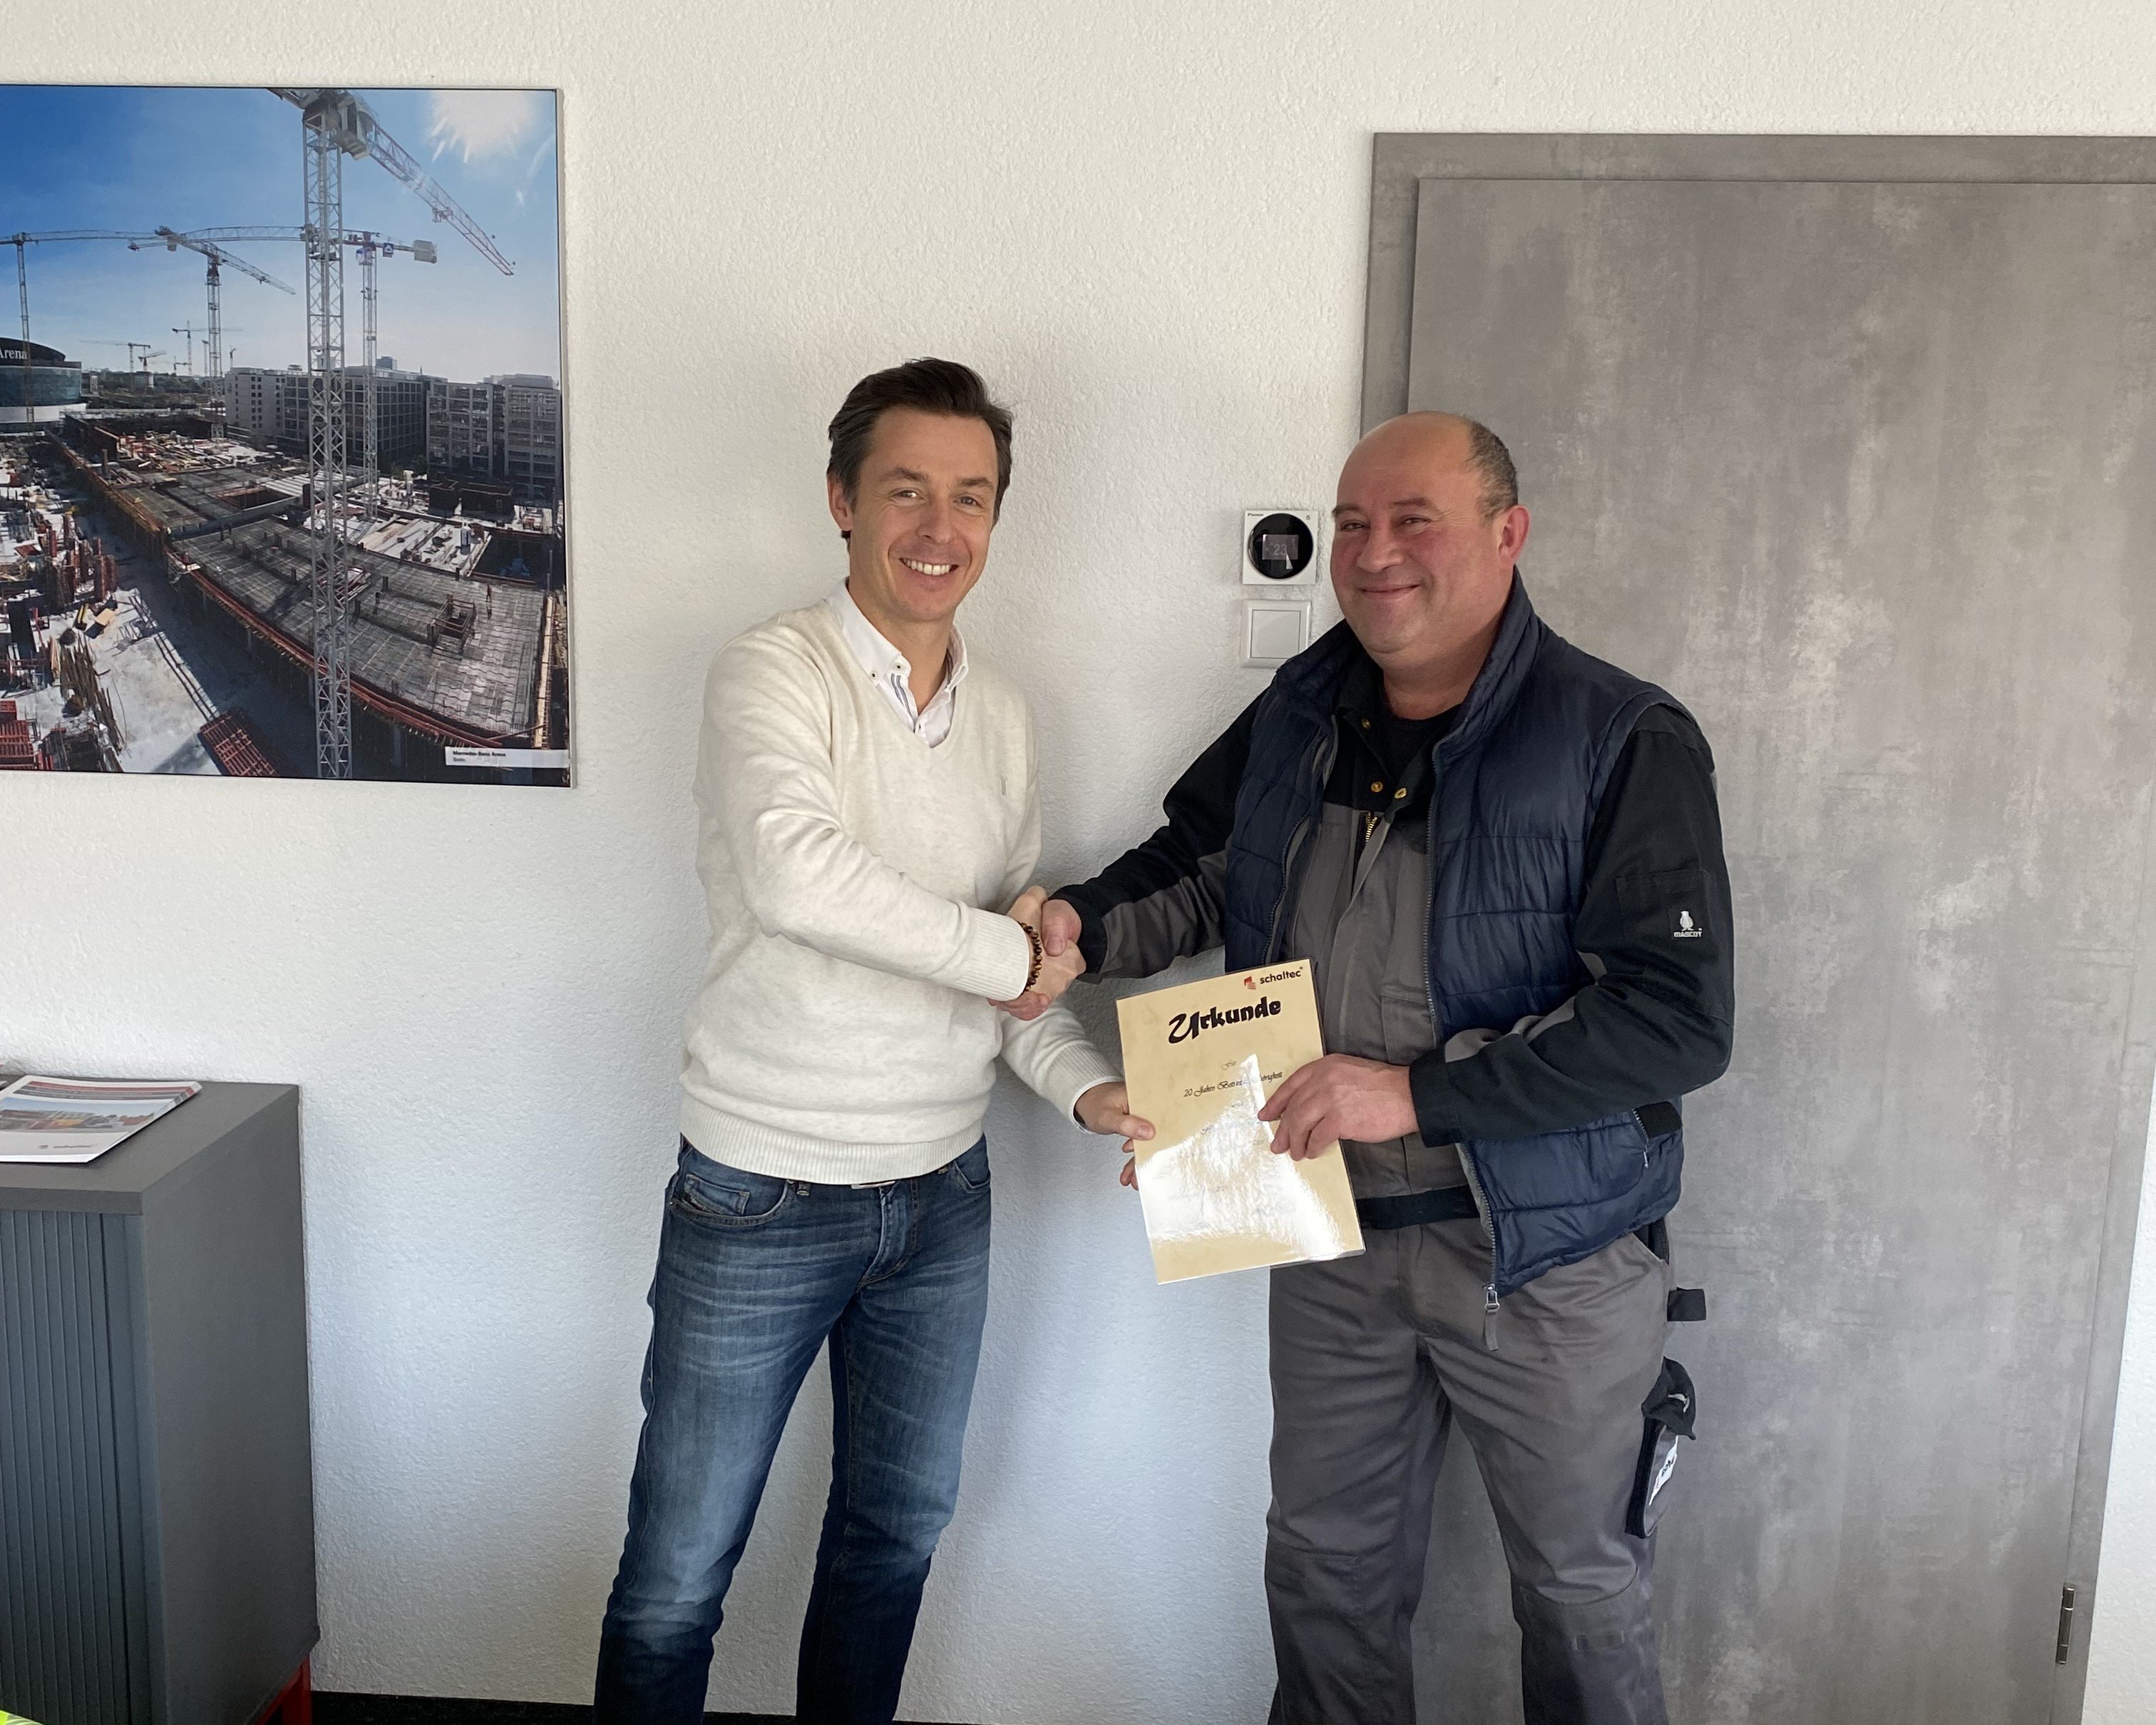 Der Geschäftsführer Enrico Seifert gratuliert dem Mitarbeiter Costa zu 20 Jahren bei der schaltec GmbH